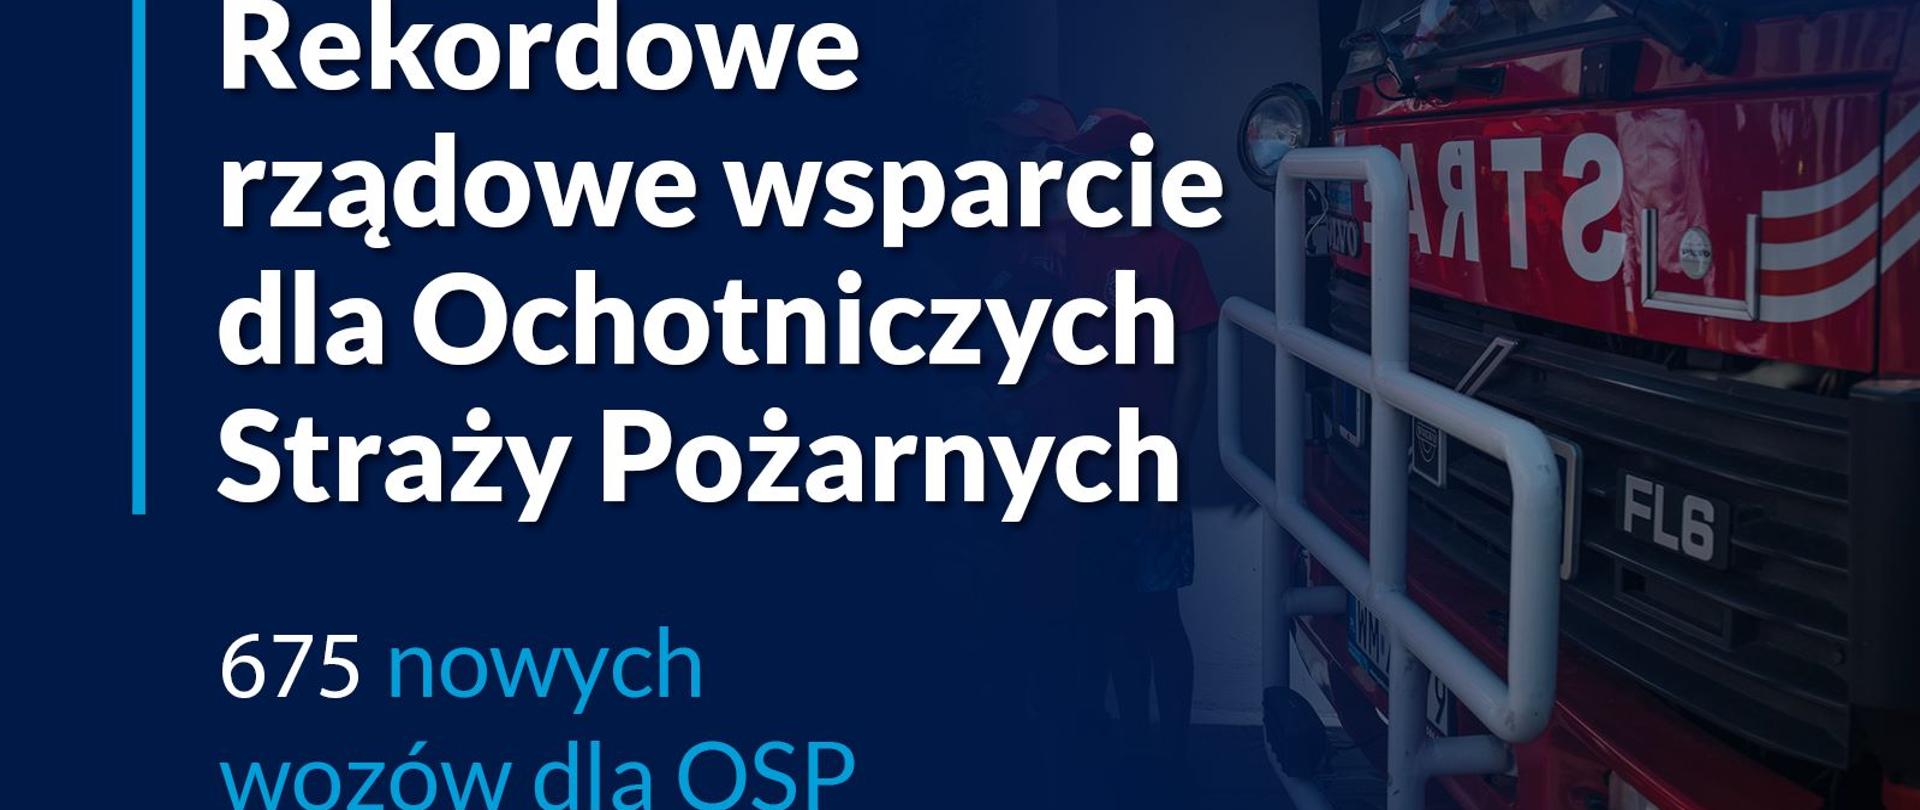 Baner "675 nowych wozów dla OSP"